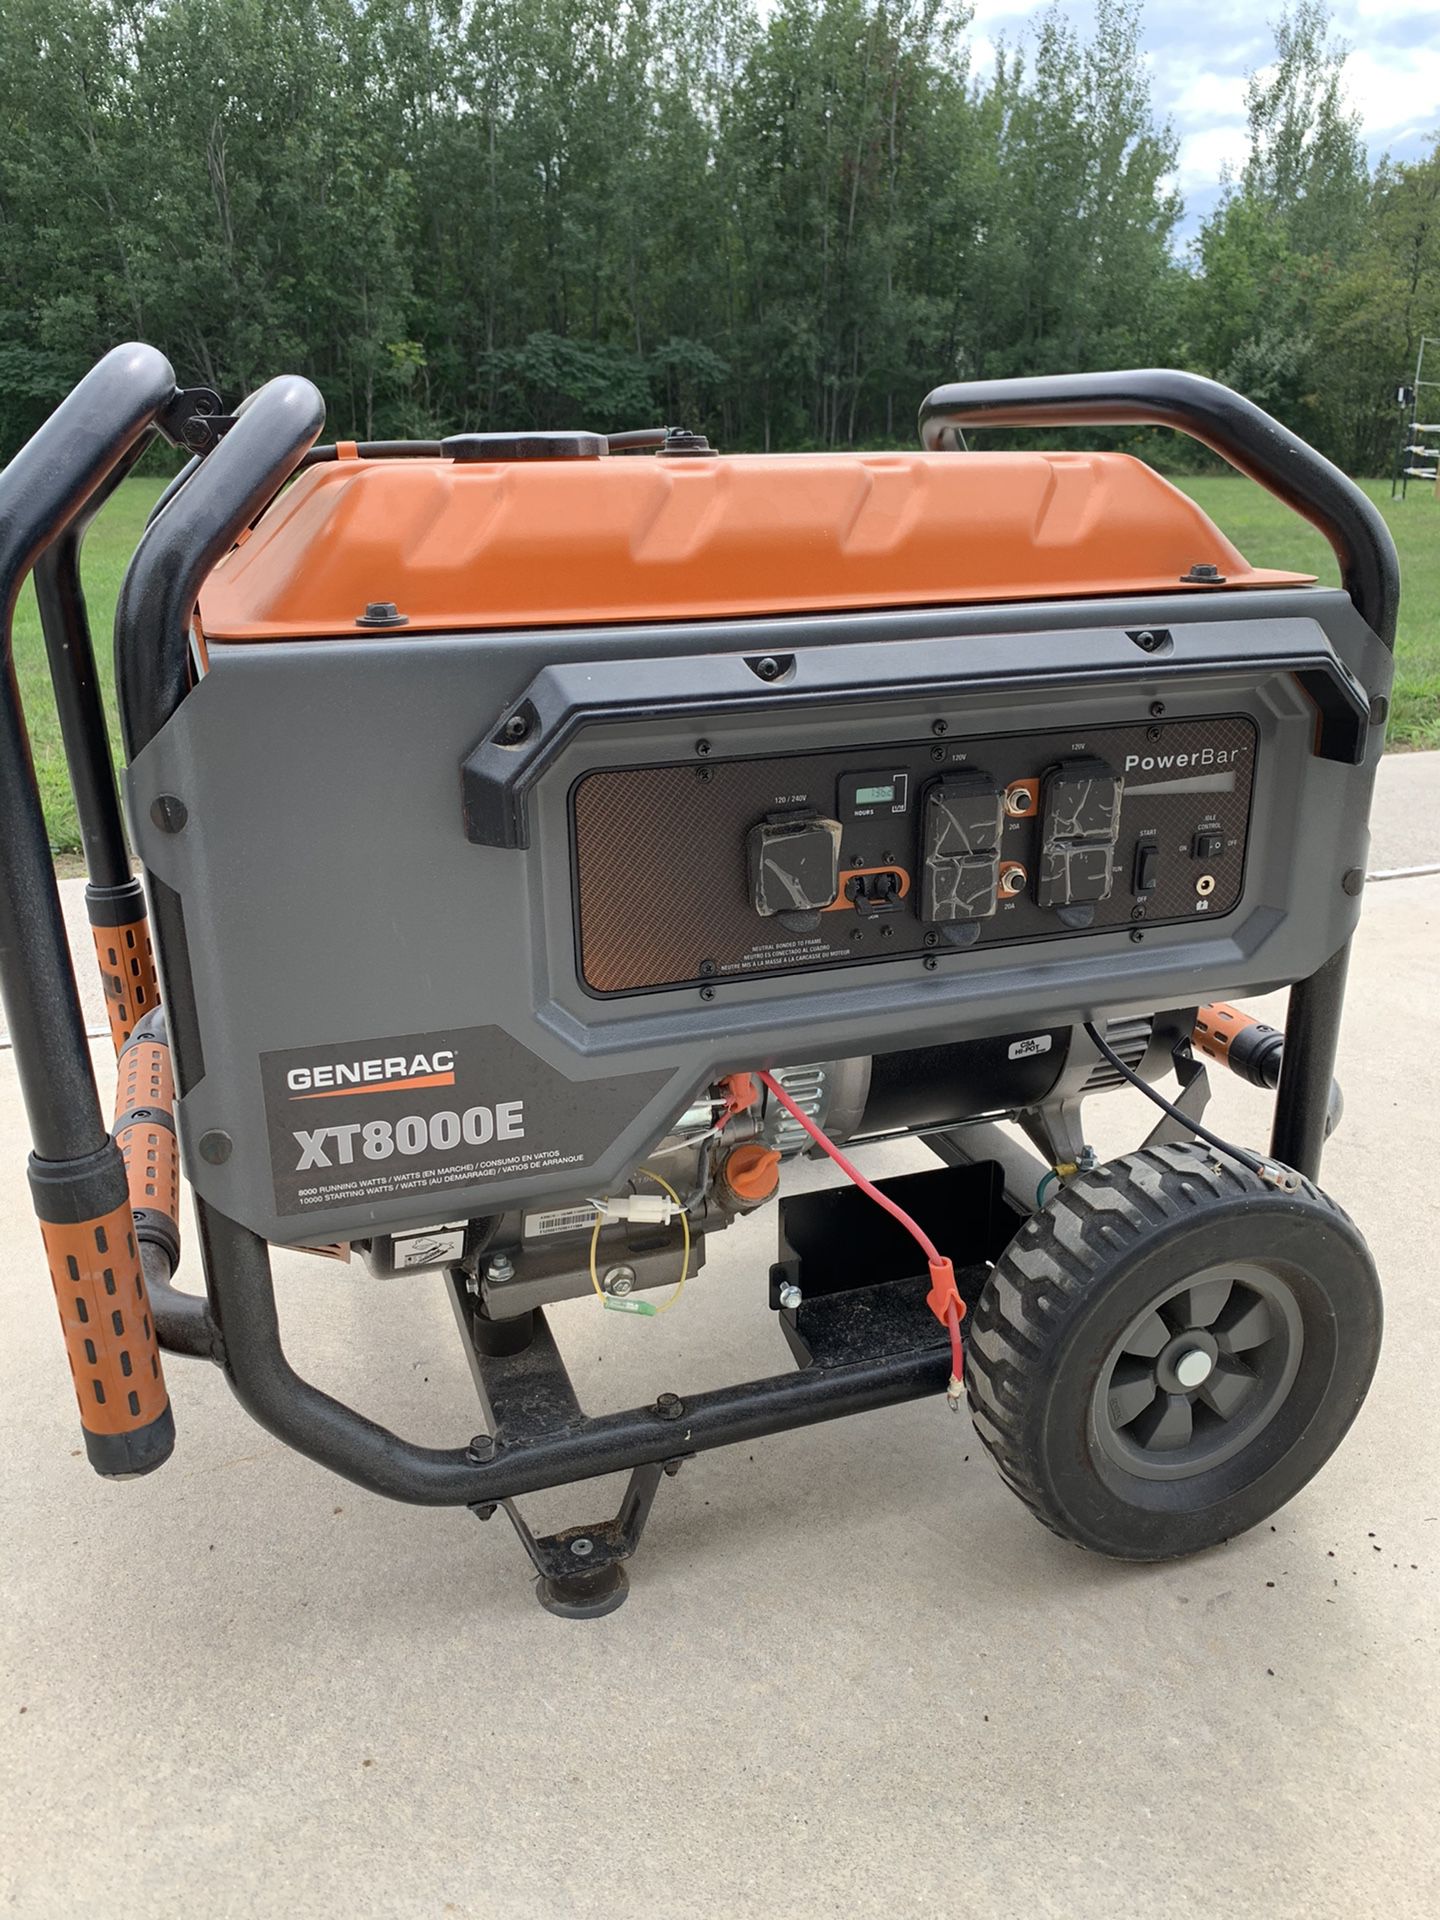 XT8000E Generac Portable Generator